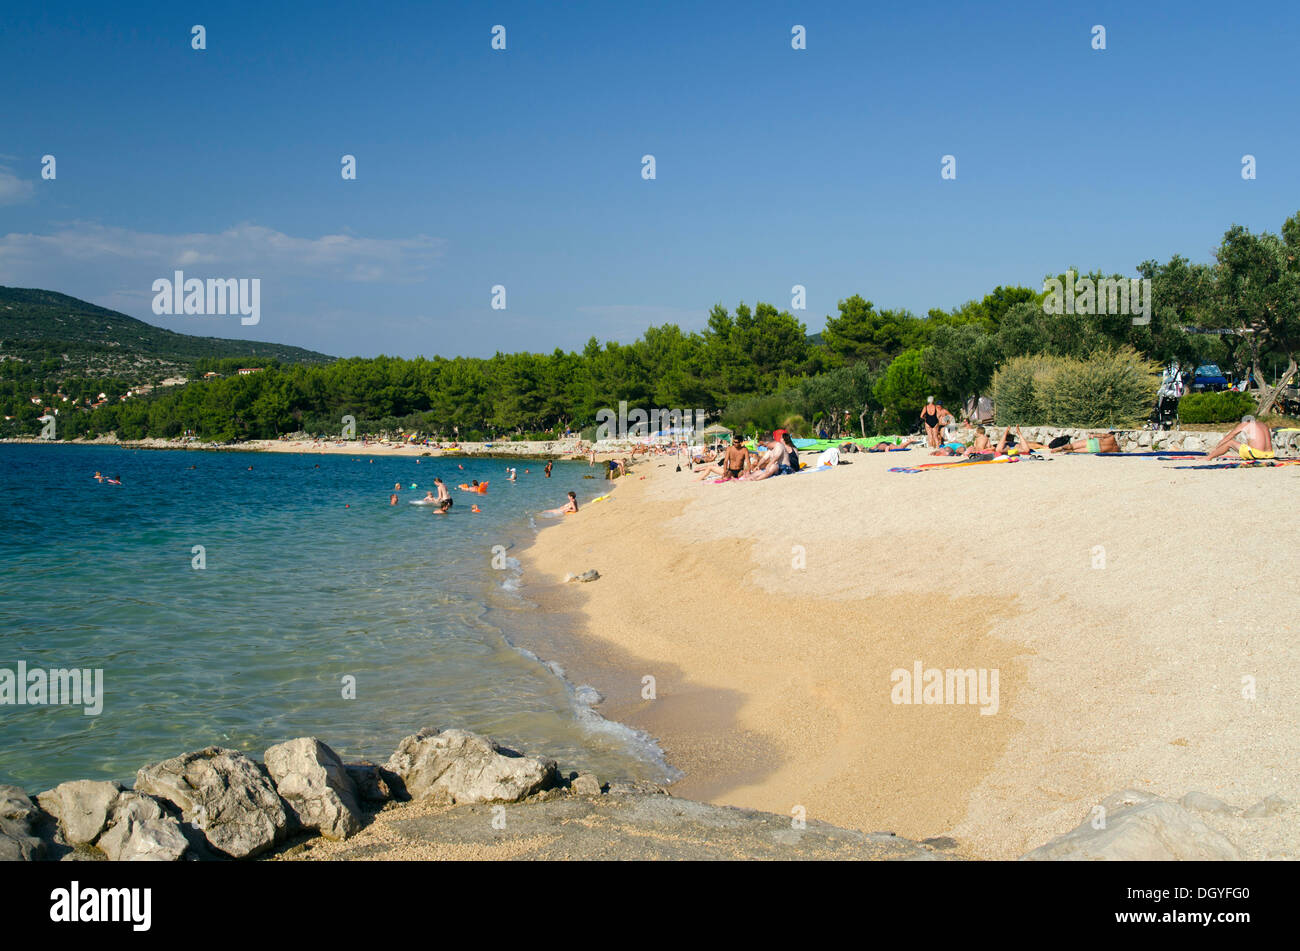 Touristen auf den sandigen Strand des Camping Kovacine Baden in der Nähe von der Stadt Cres, Insel Cres, Adria, Kvarner Bucht, Kroatien Stockfoto